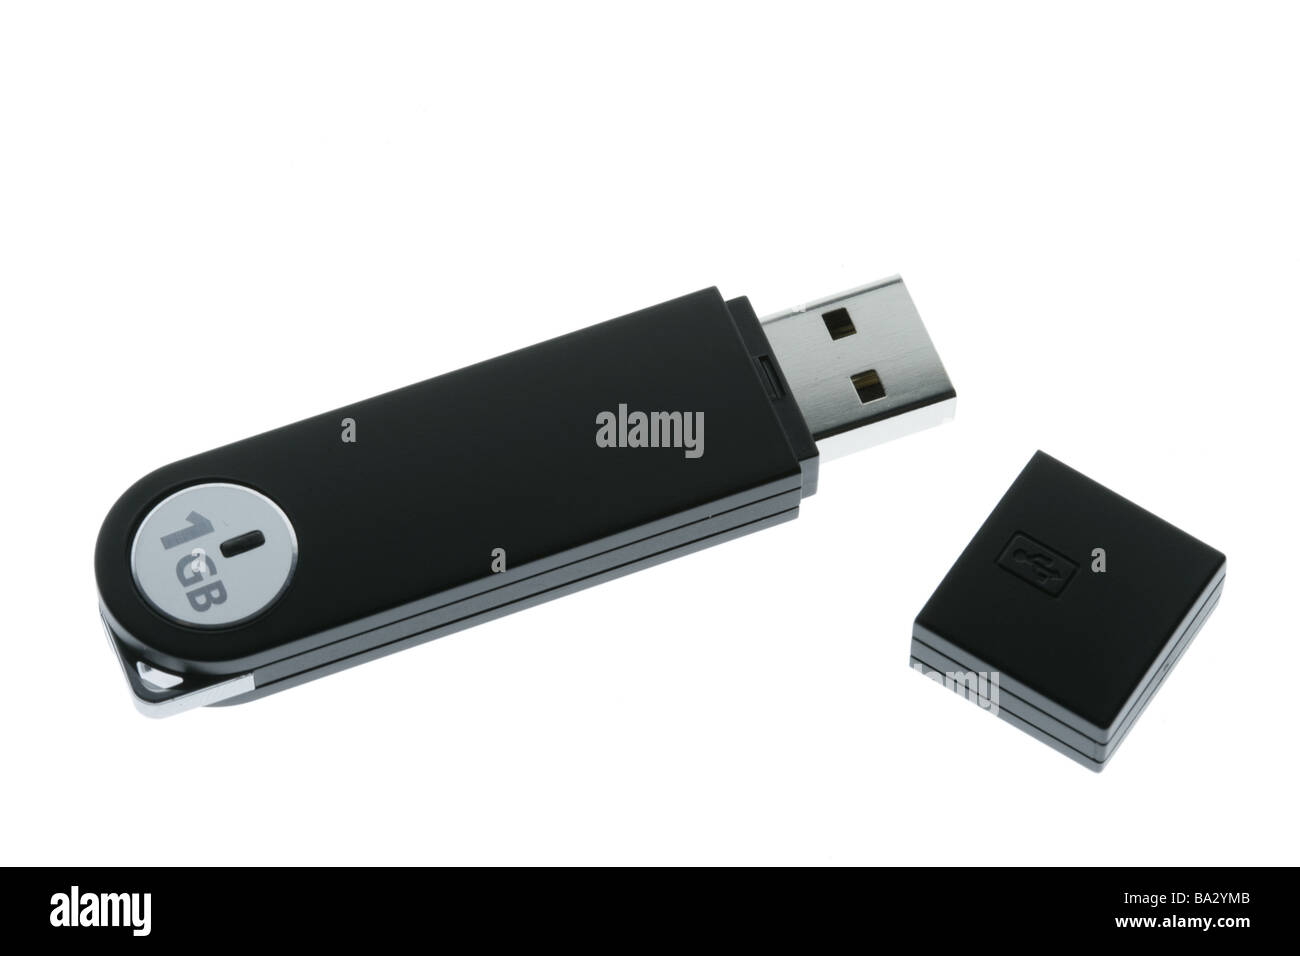 USB-Stick 1 GB cap series hardware embroiders USB-Gerät USB-Speicher-Stick USB Flash Drive USBStick USB-Stift USB memory Stock - Alamy